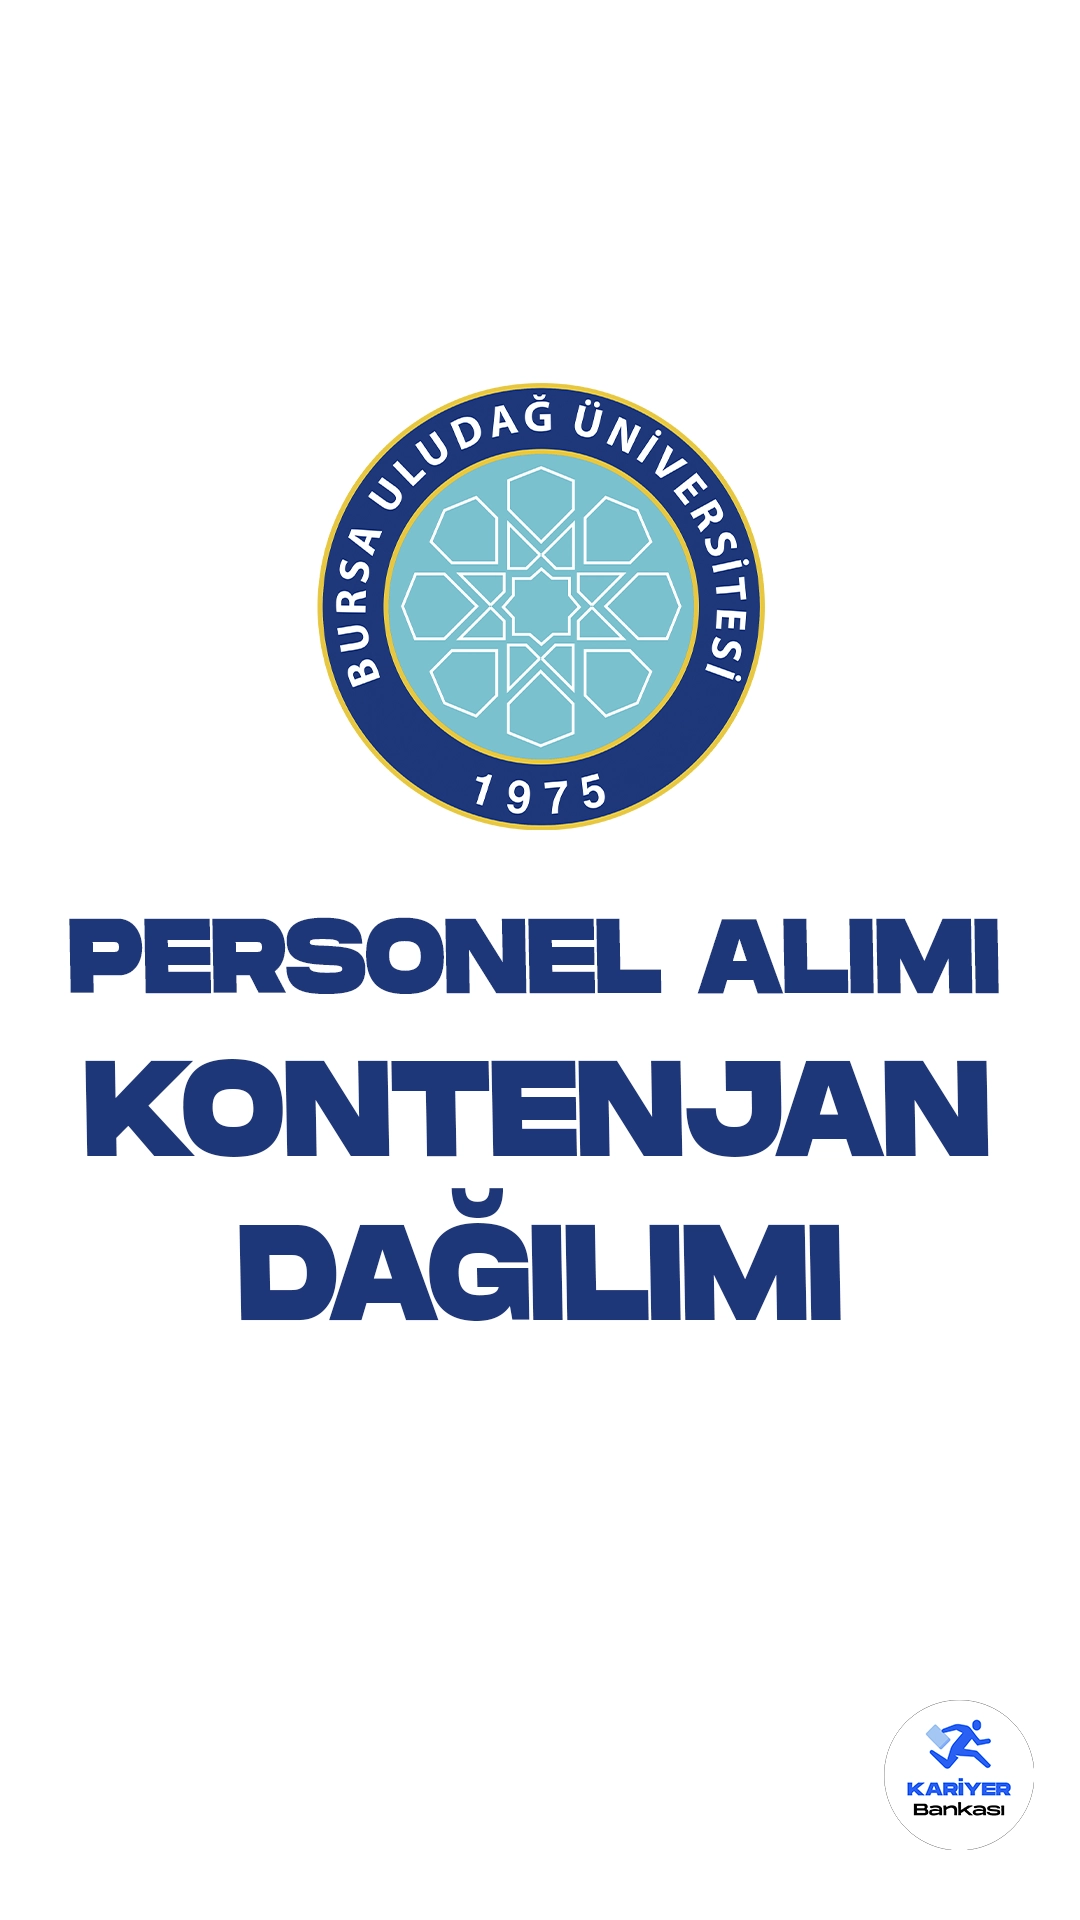 Bursa Uludağ Üniversitesi 50 personel alımı başvuruları sürüyor. Kontenjan dağılımı ve başvuru şartlarına dair detaylat bu haberimizde.